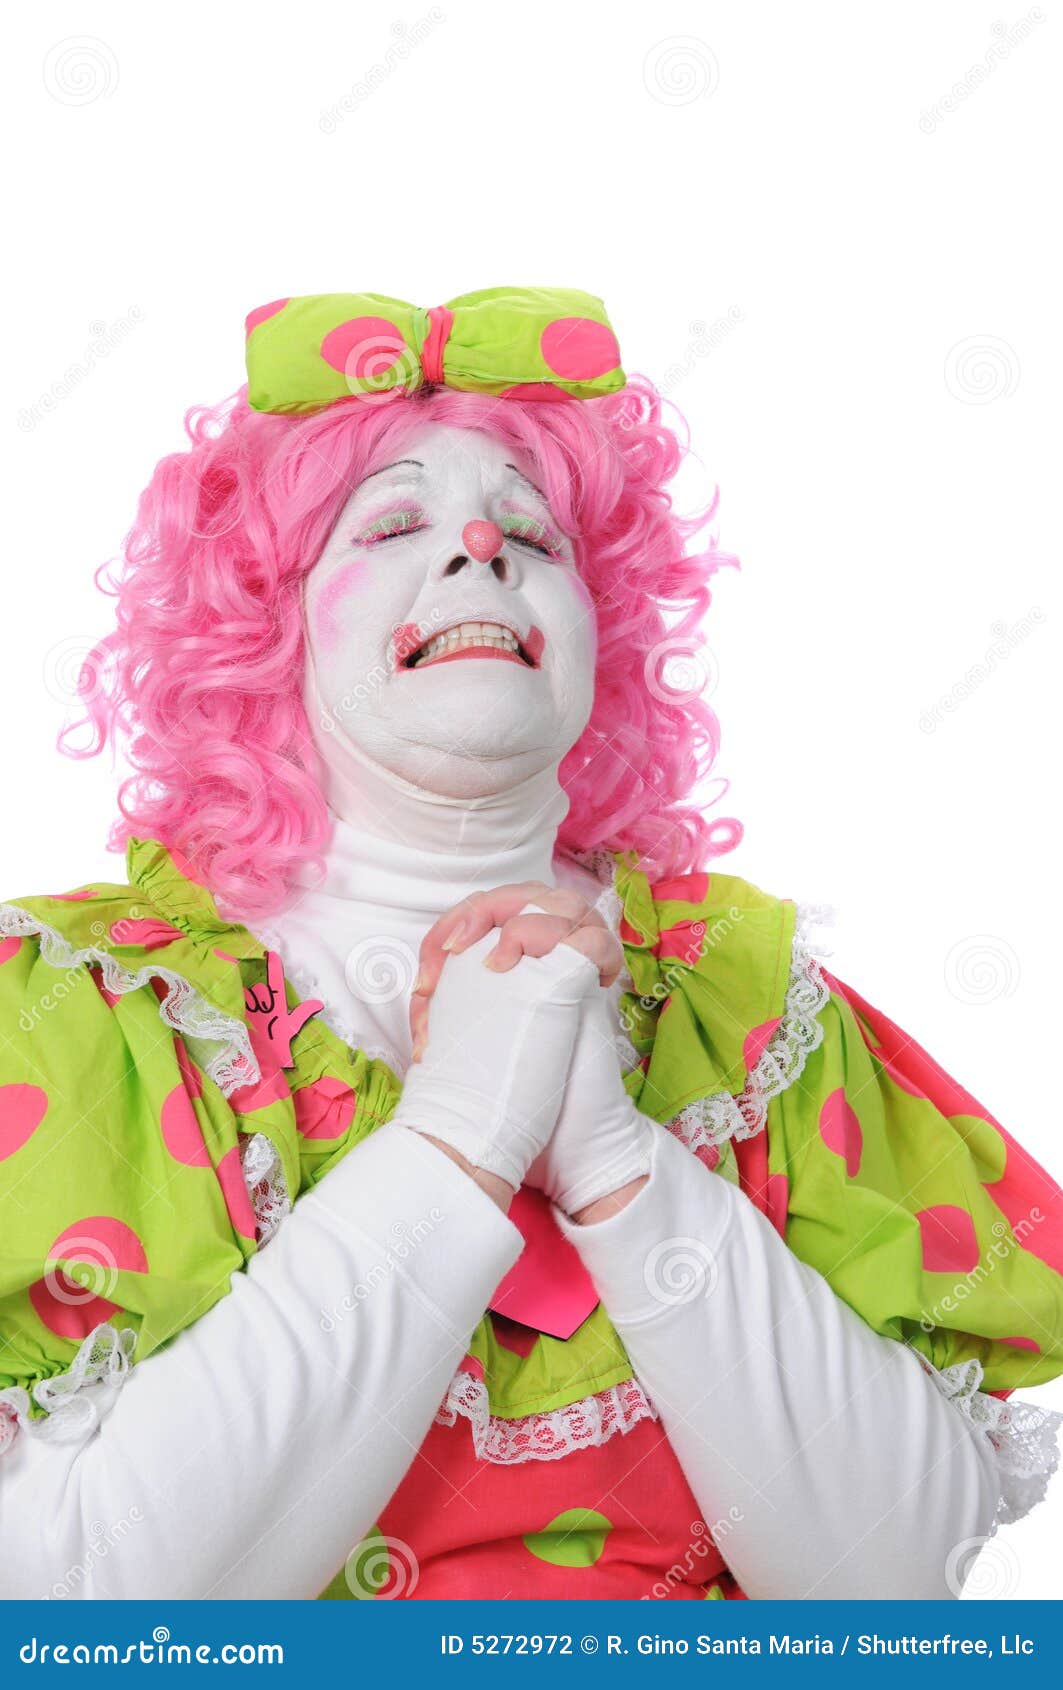 clown-praying-5272972.jpg